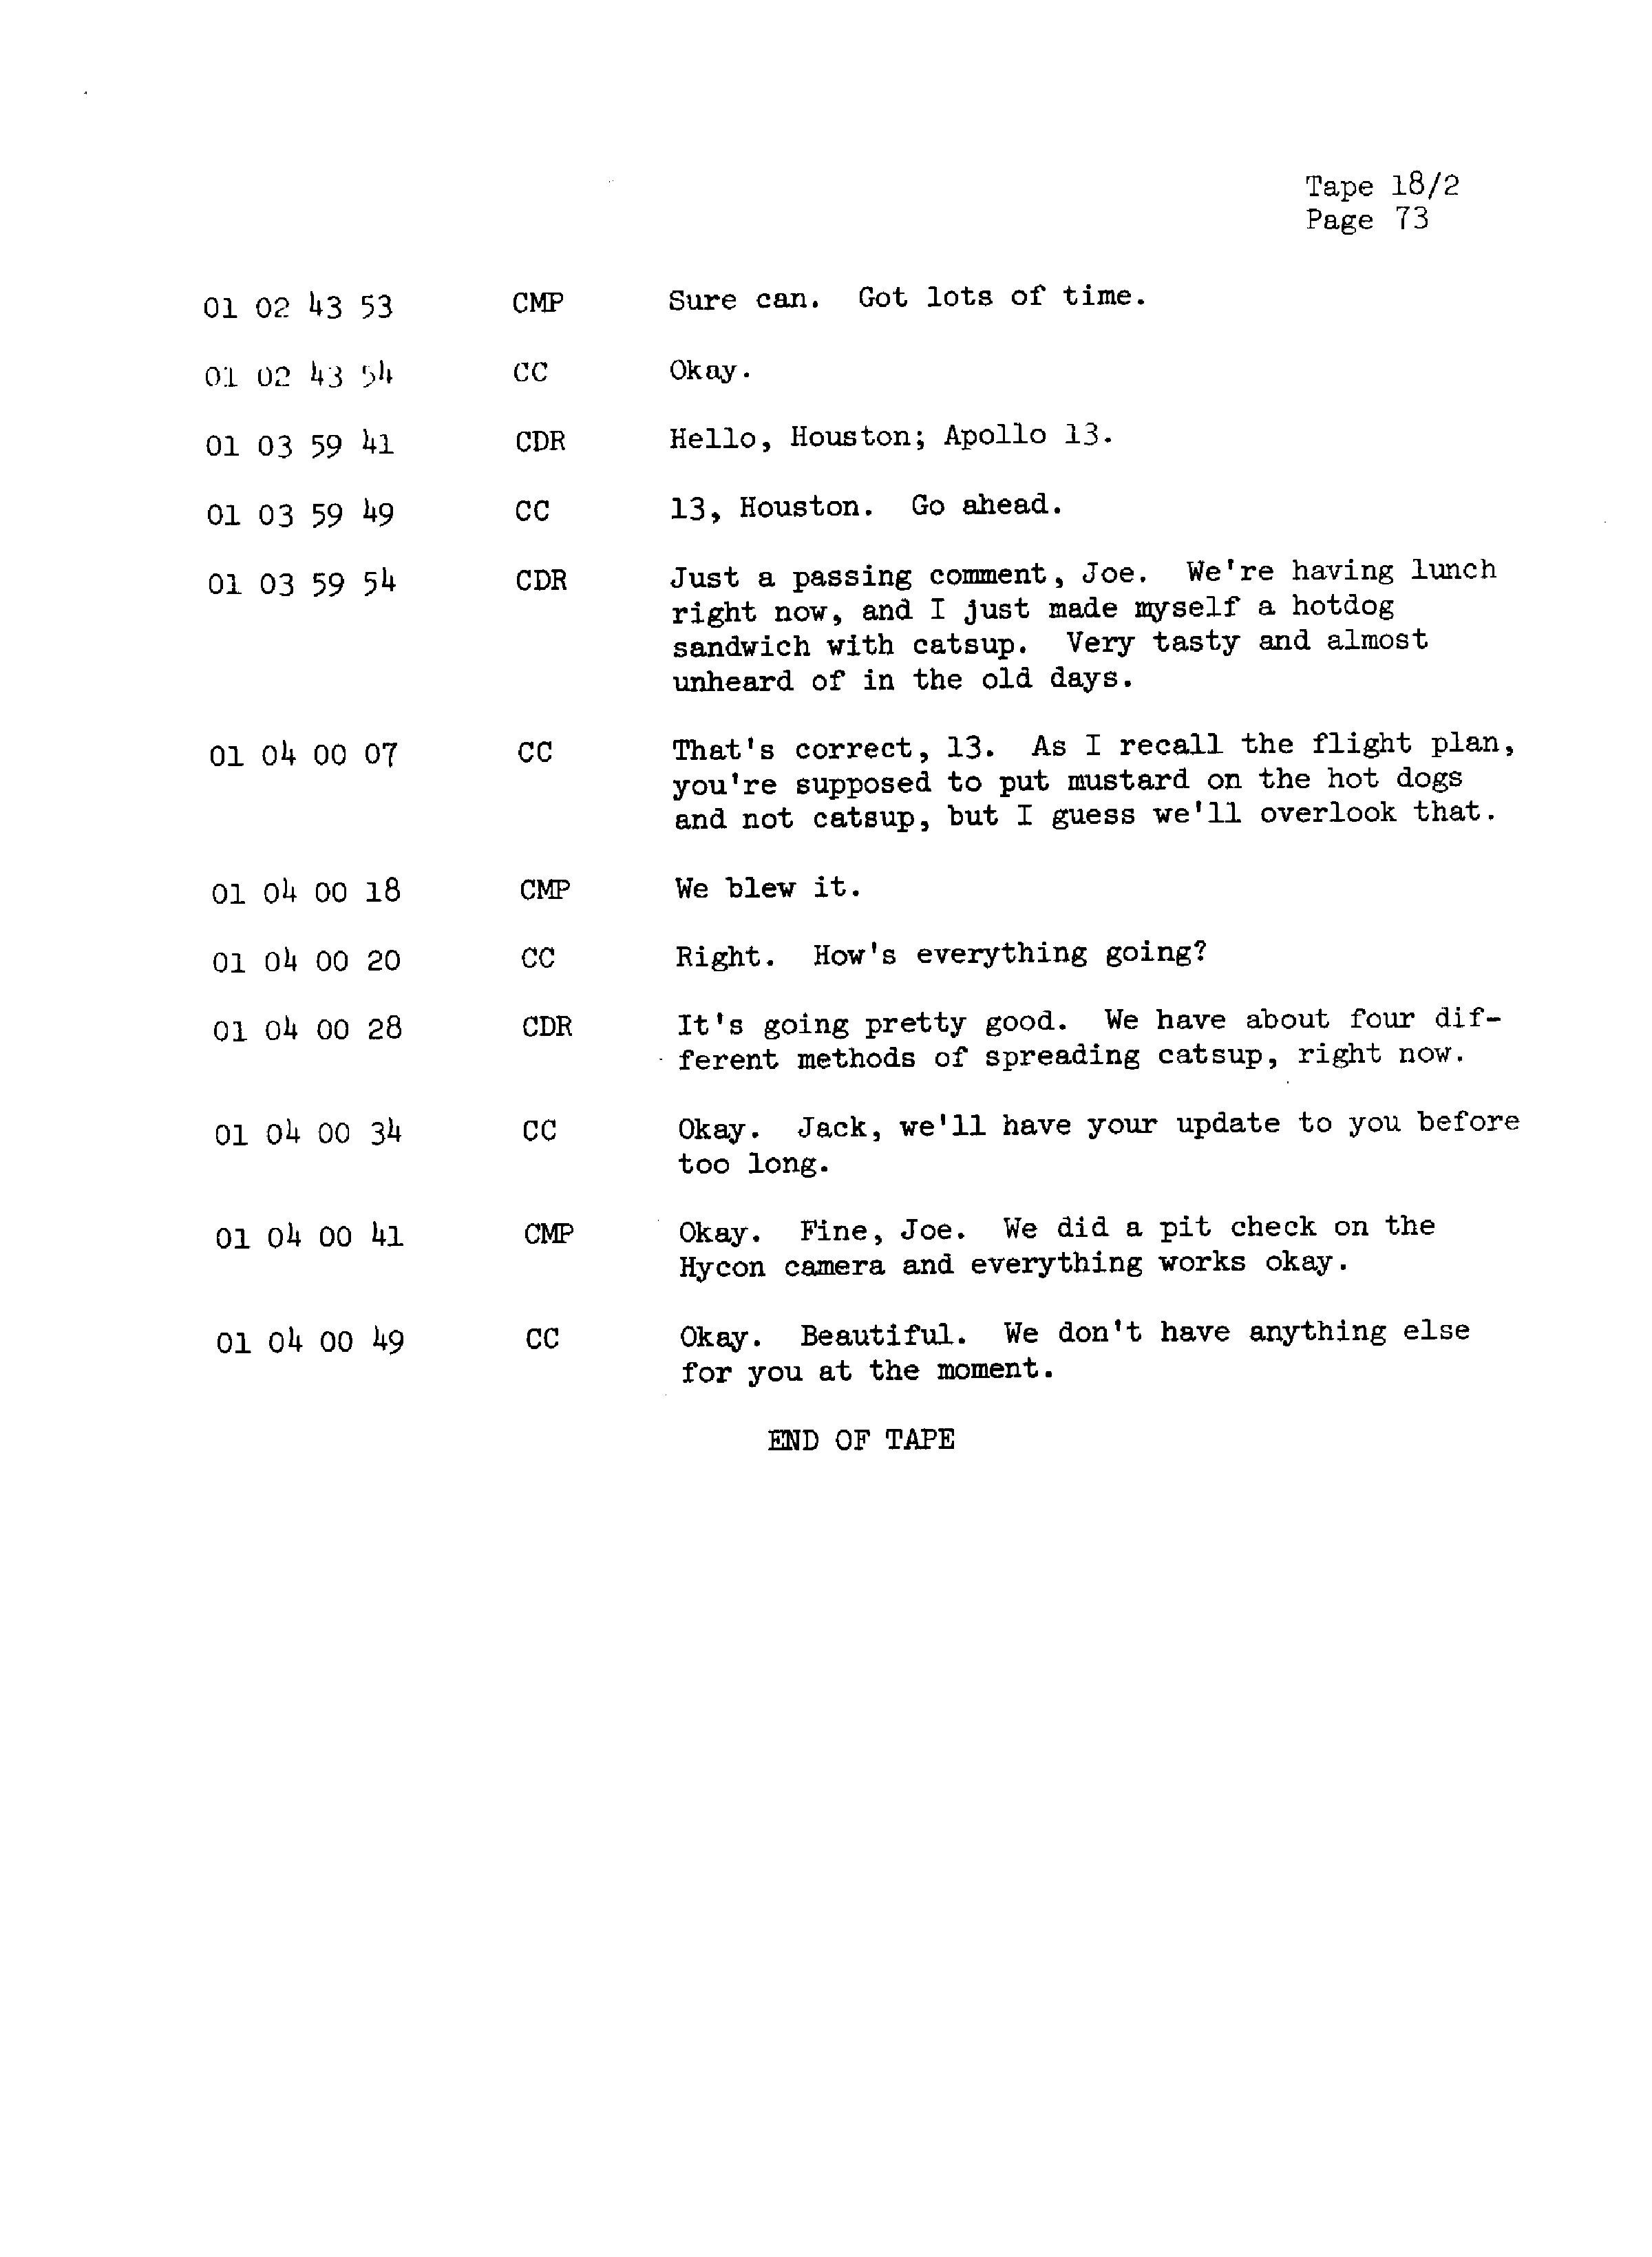 Page 80 of Apollo 13’s original transcript